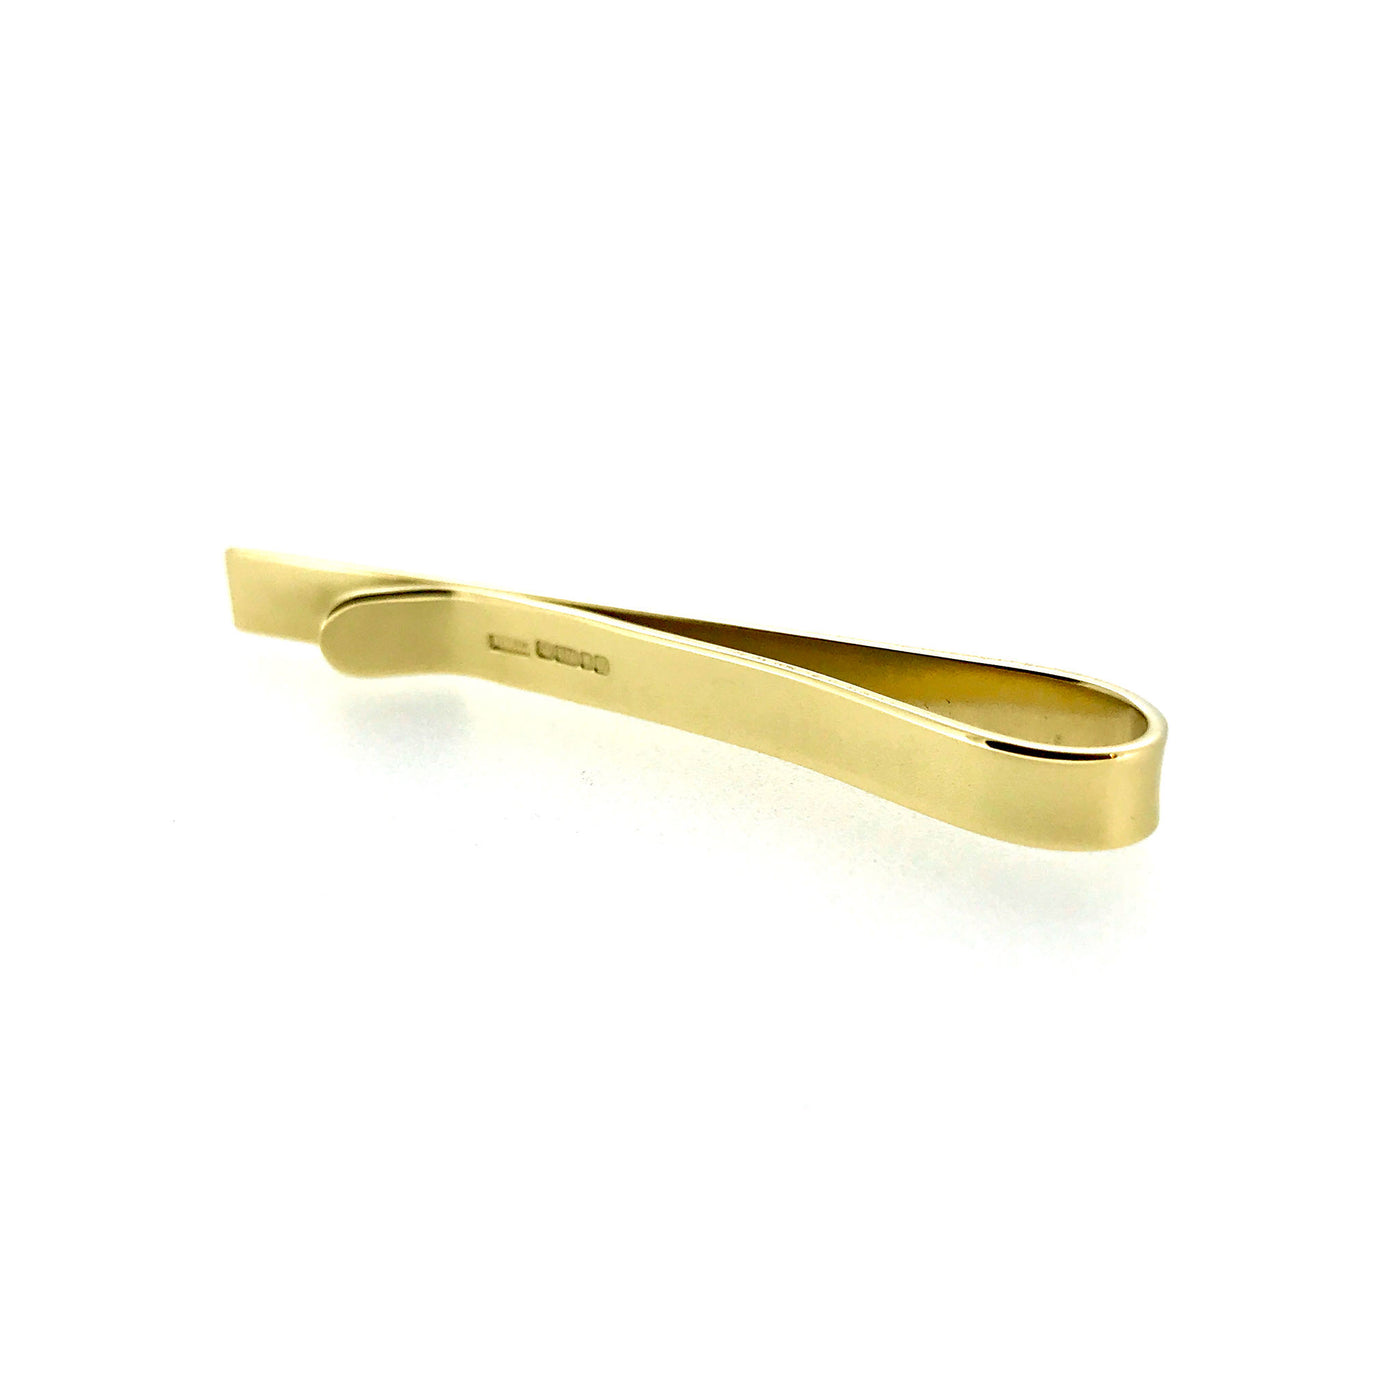 Elegant 9ct Gold Tie Clip - 5mm Hallmarked Tie Slide | Roberts & Co